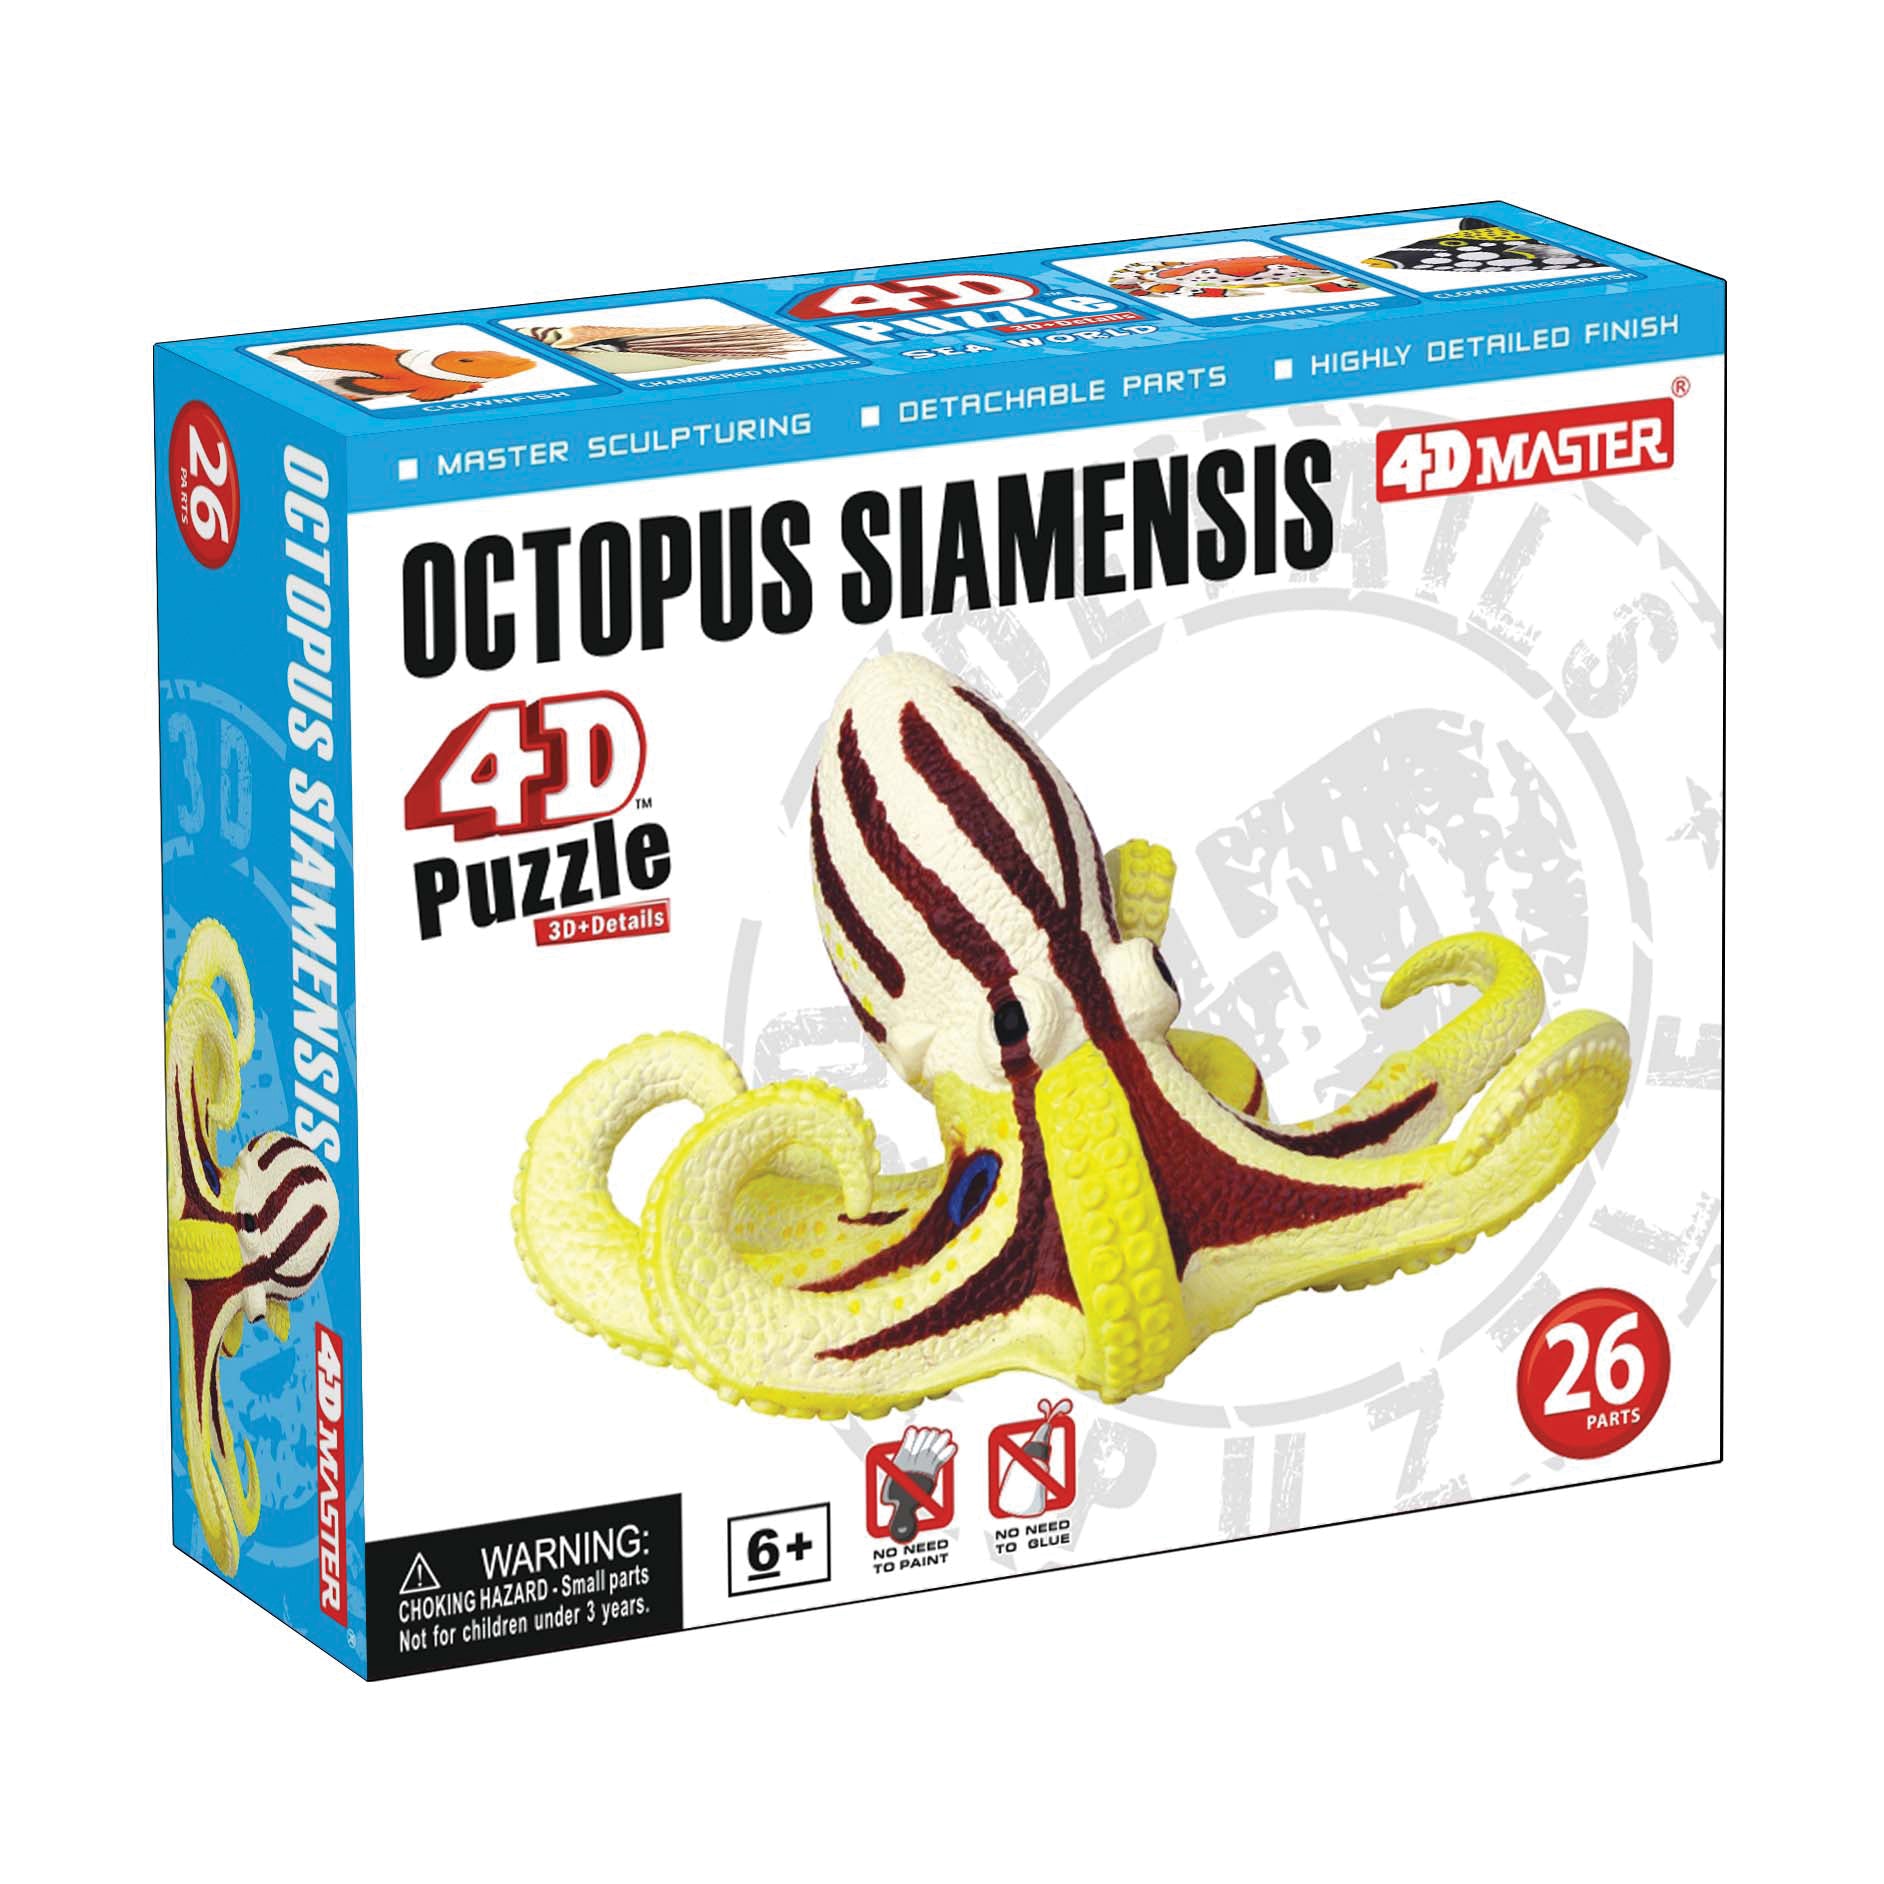 4D Puzzle - Octopus Siamensis